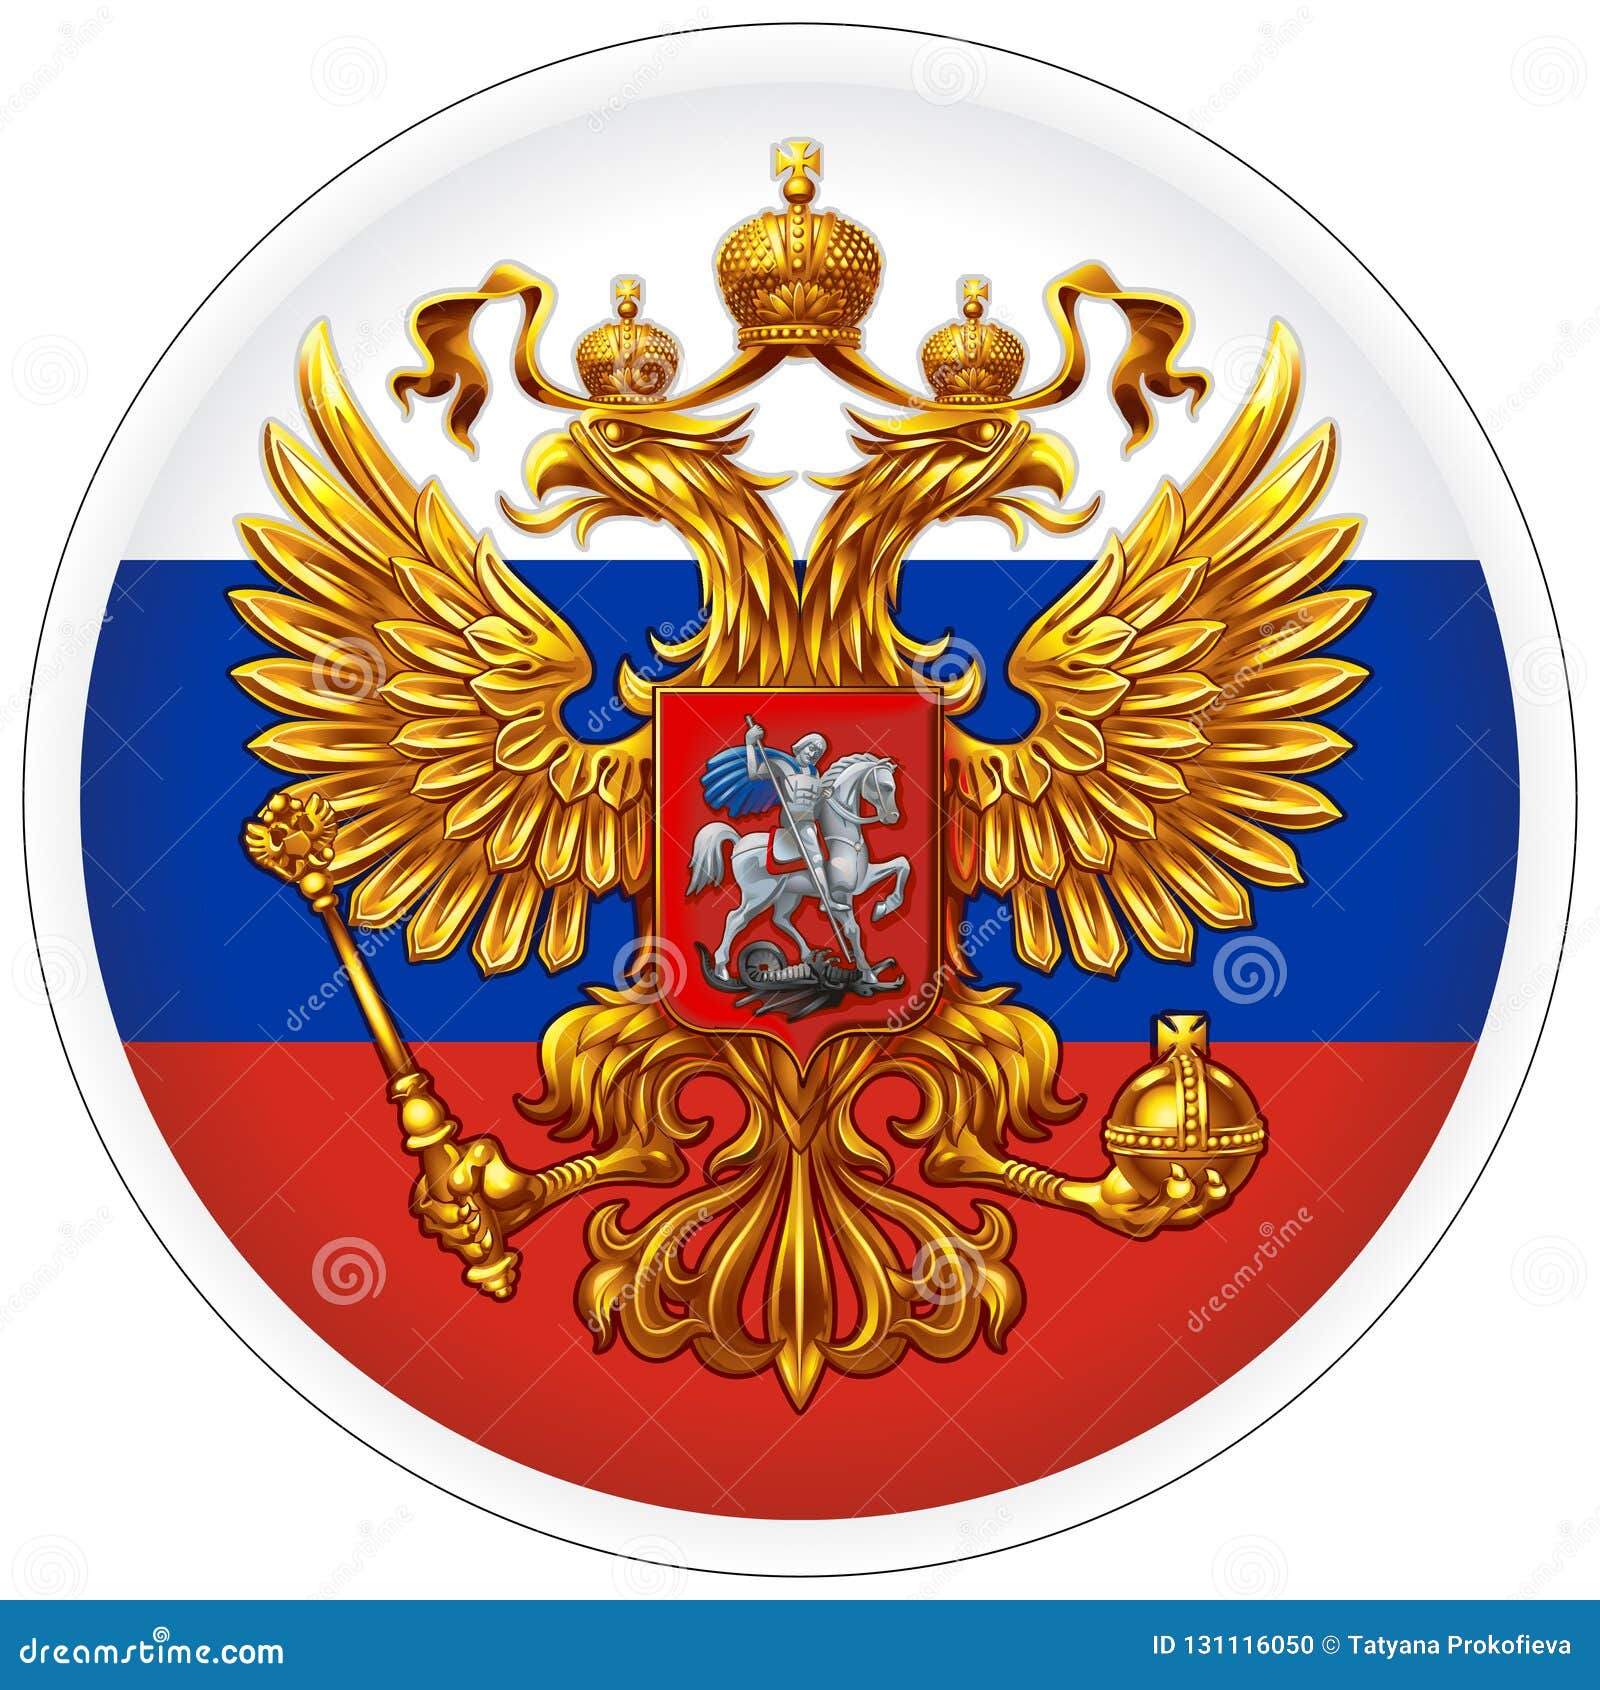 bandeira da federação russa - Fotos de arquivo #3319643